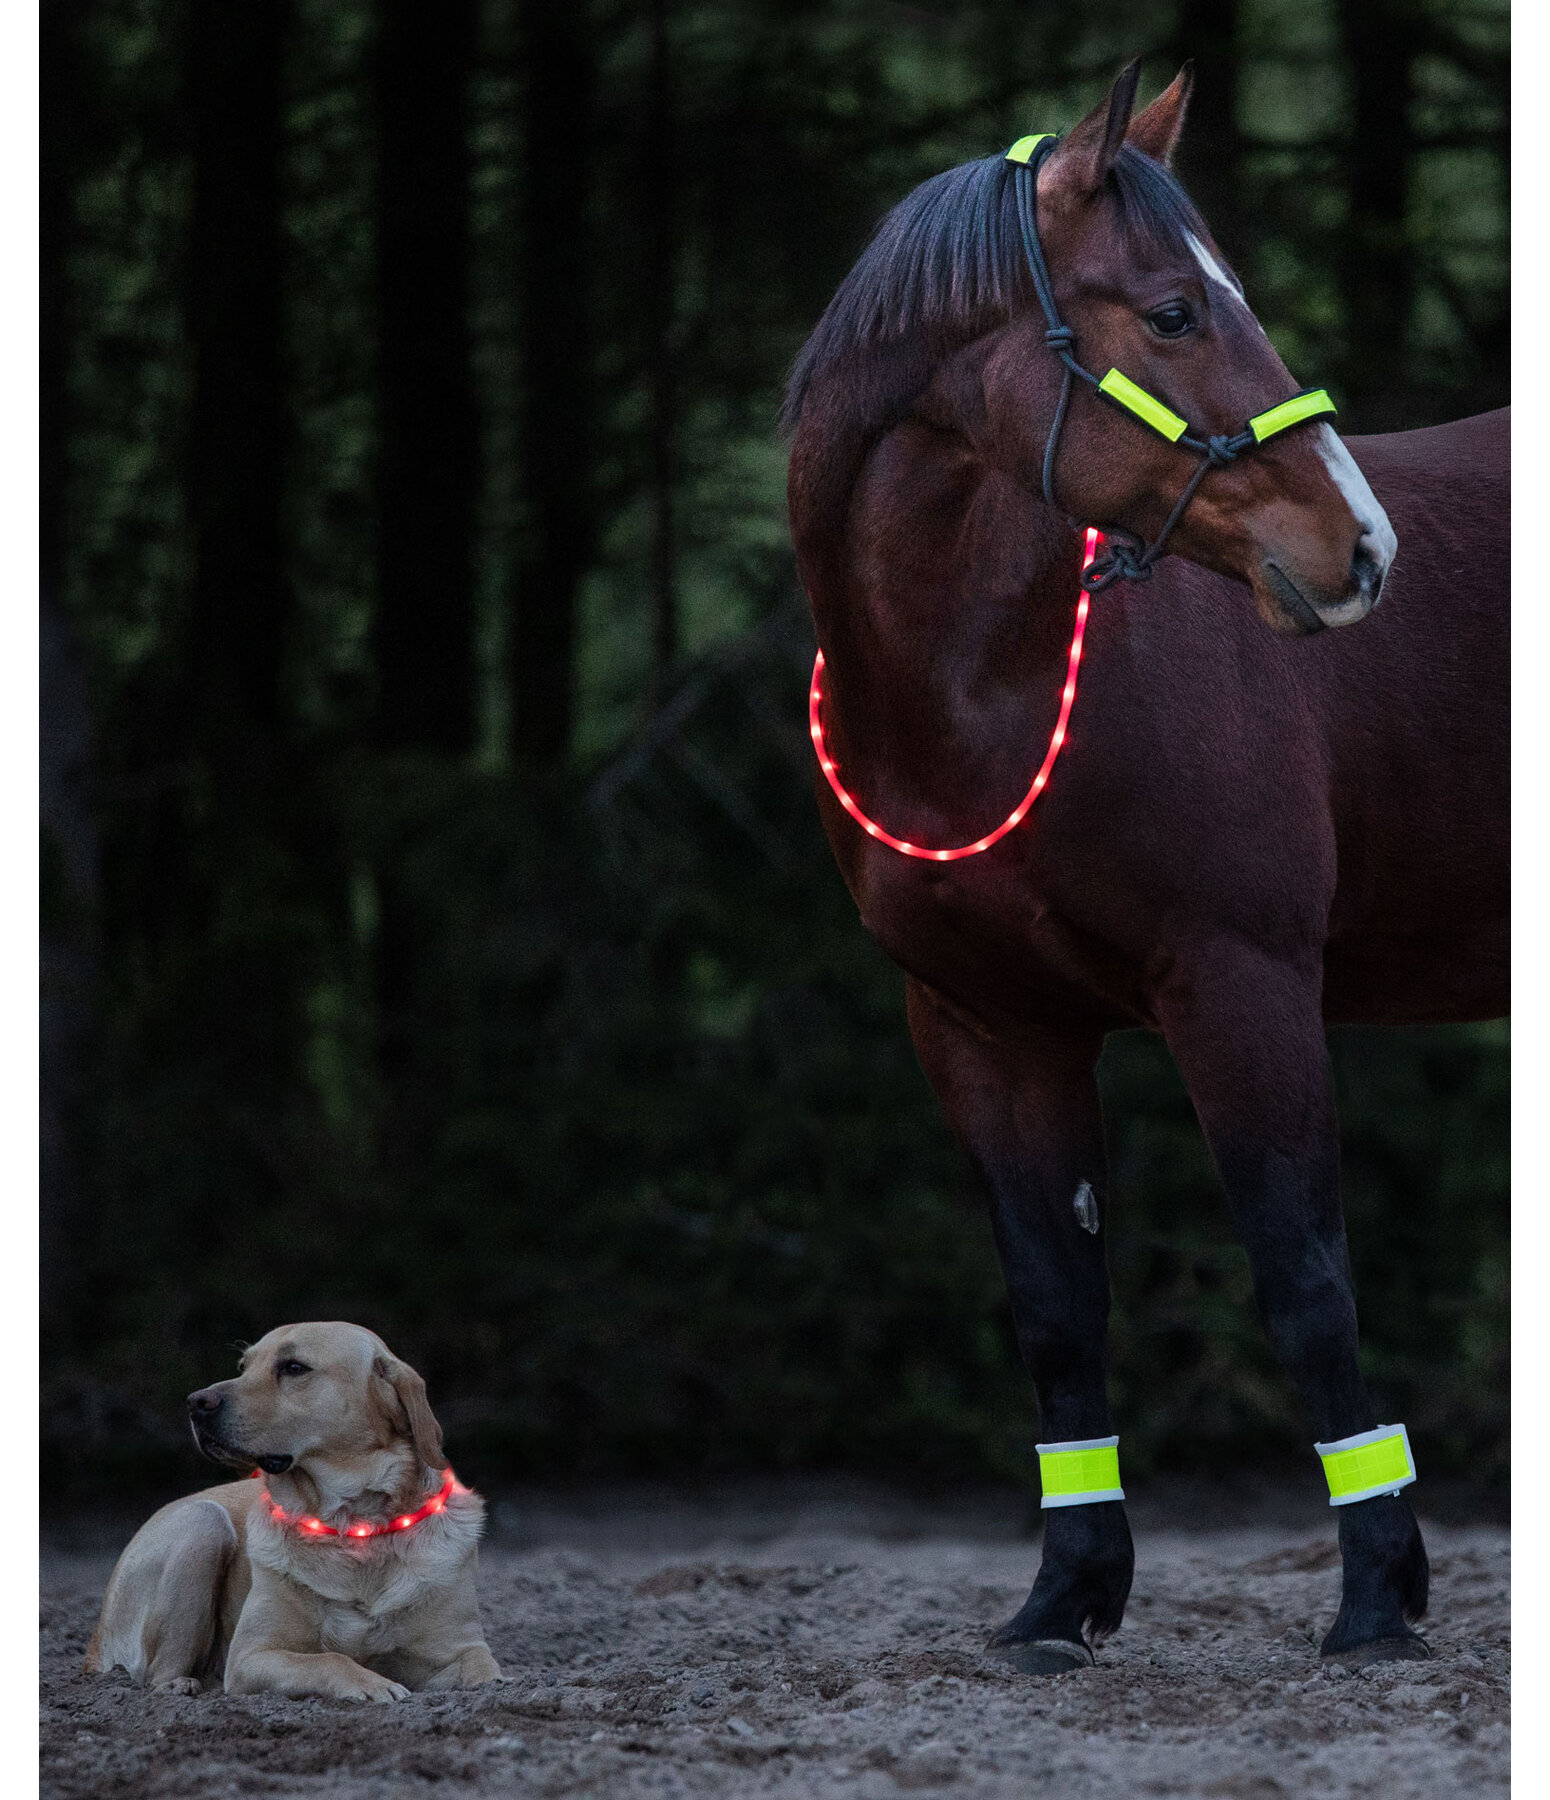 LED-Light Neck Strap for Horses